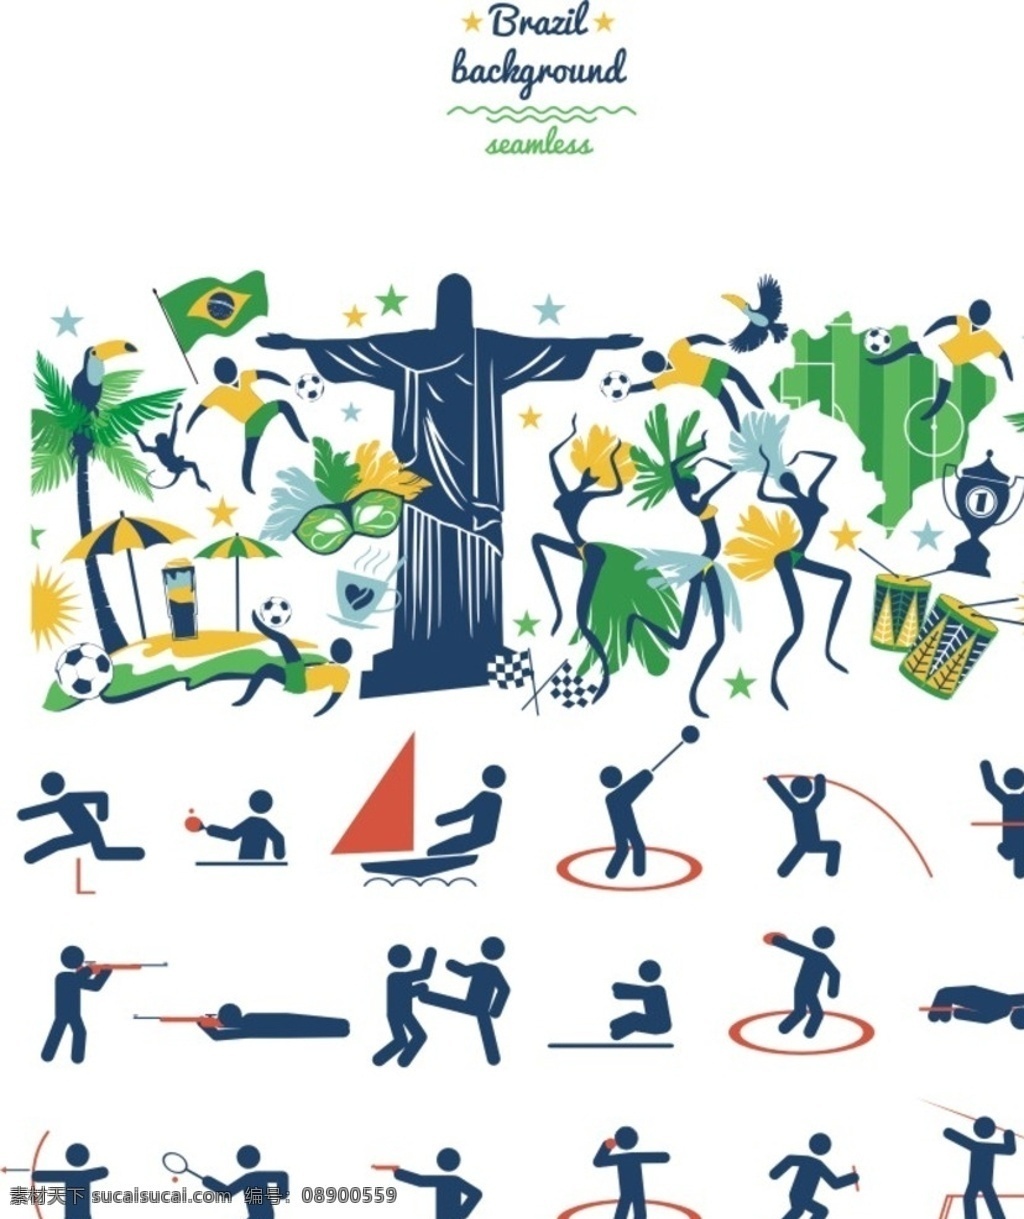 里约奥运会 运动 体育 图标 抽象 人物 文化墙 体育墙 剪影 线条 铅球 帆船 游泳 击剑 网球 体育项目